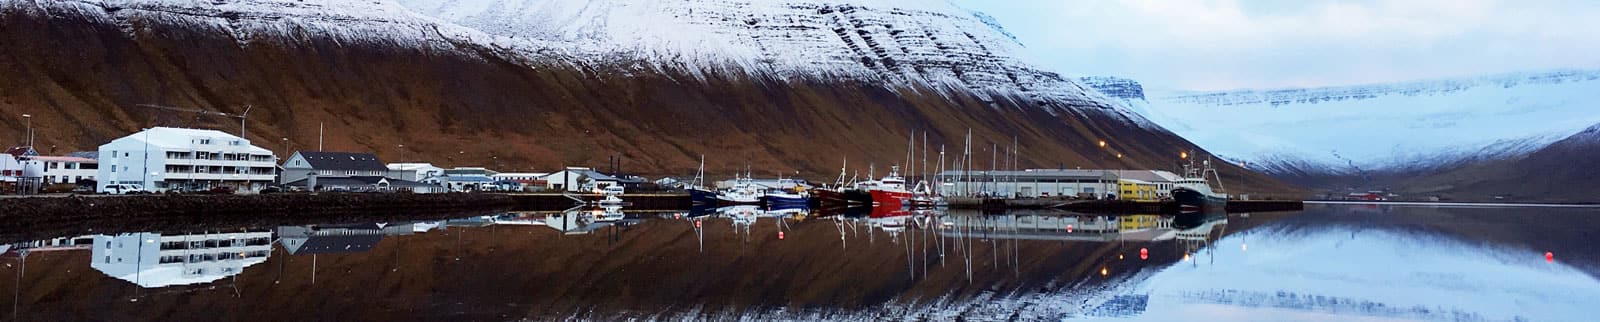 アイスランド、イーサフィヨルズル行きクルーズ | ノルウェージャン 